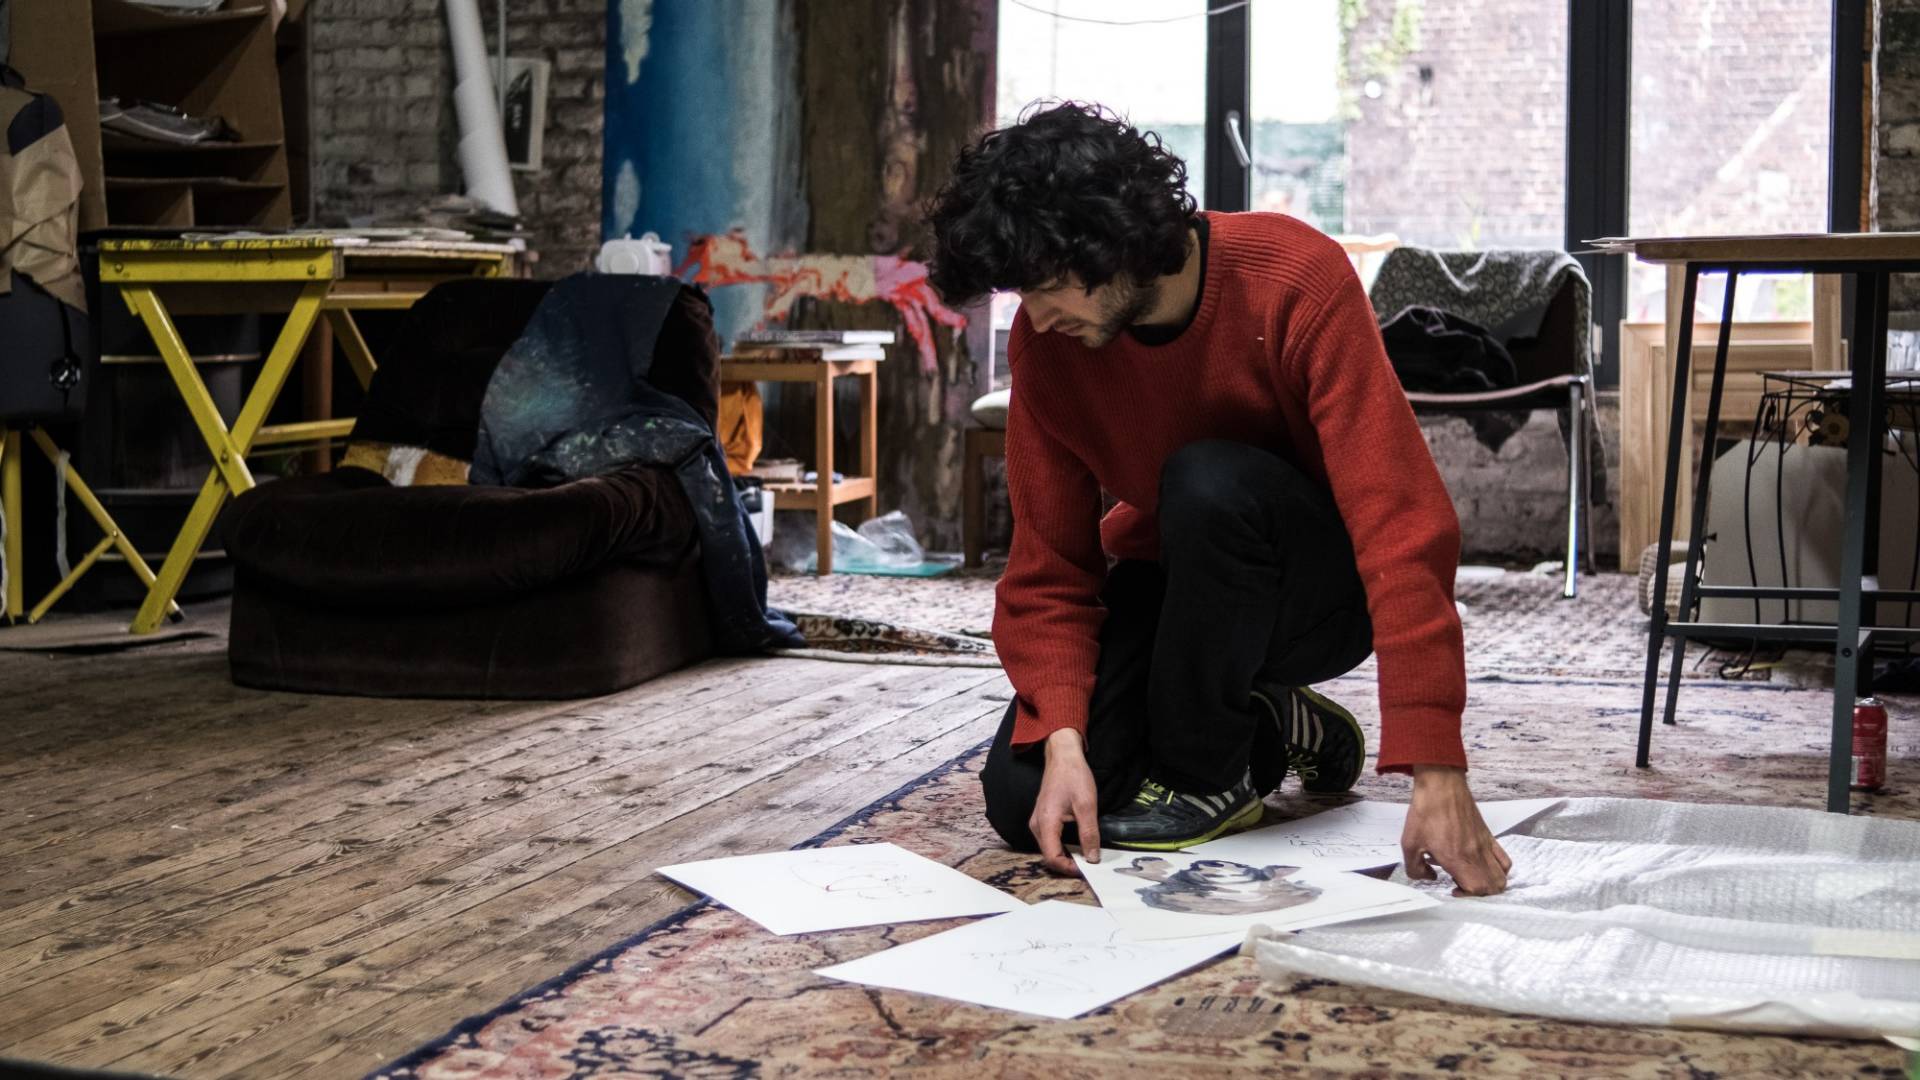 Andriu Deplazes kniet auf dem Boden seines Ateliers und sortiert und betrachtet Skizzen, die er mit Tusche auf weissen Blättern gezeichnet hatte.